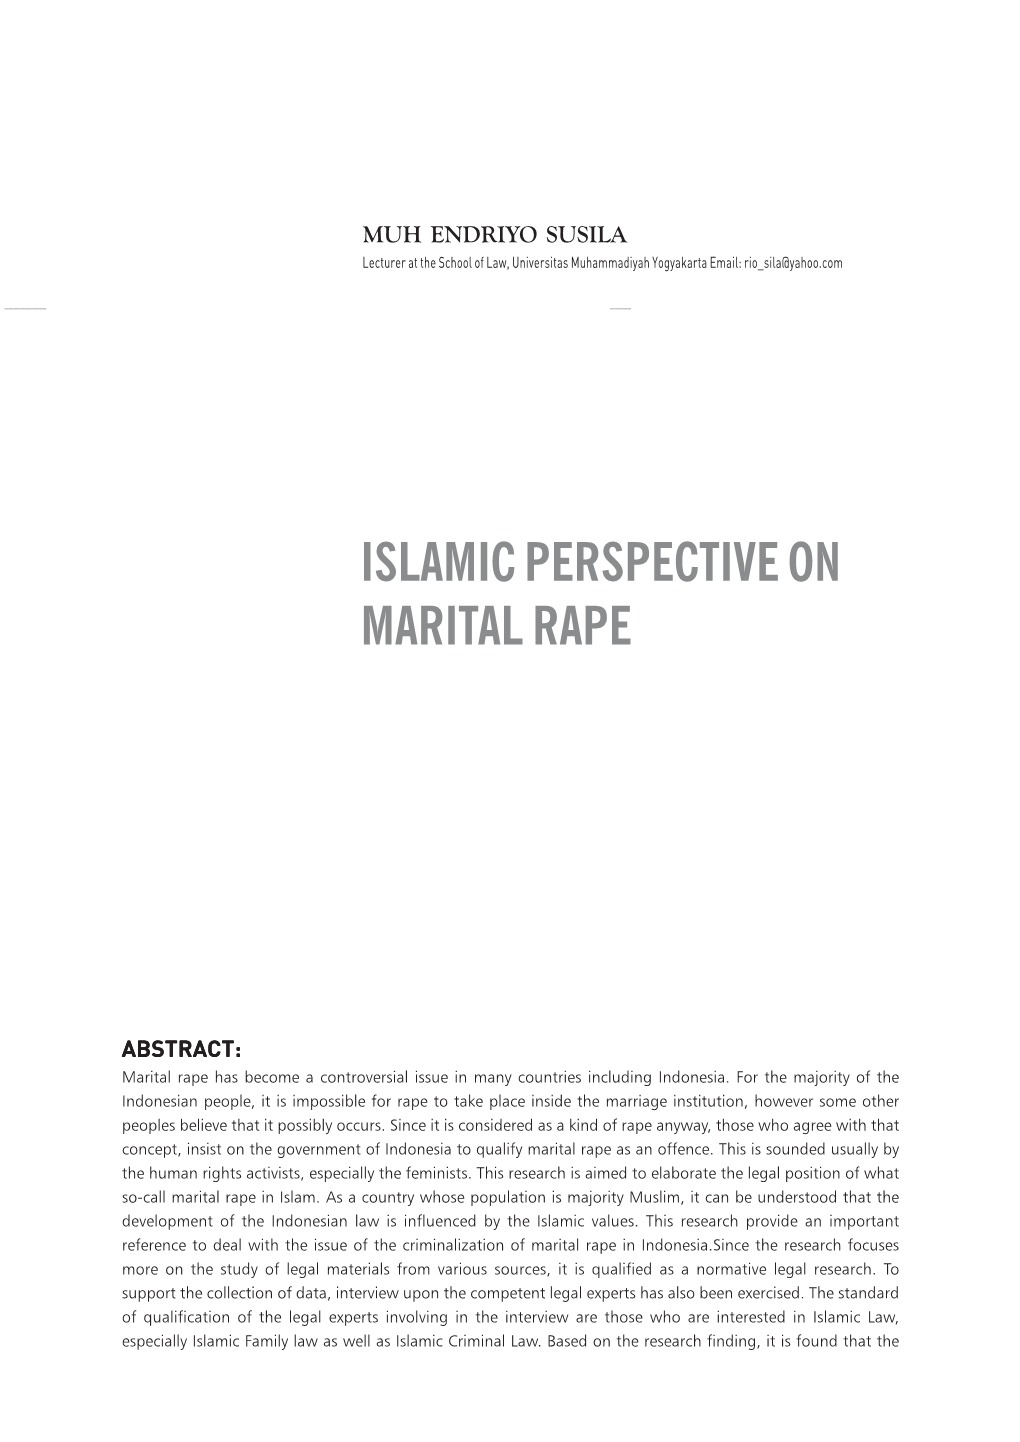 Islamic Perspective on Marital Rape